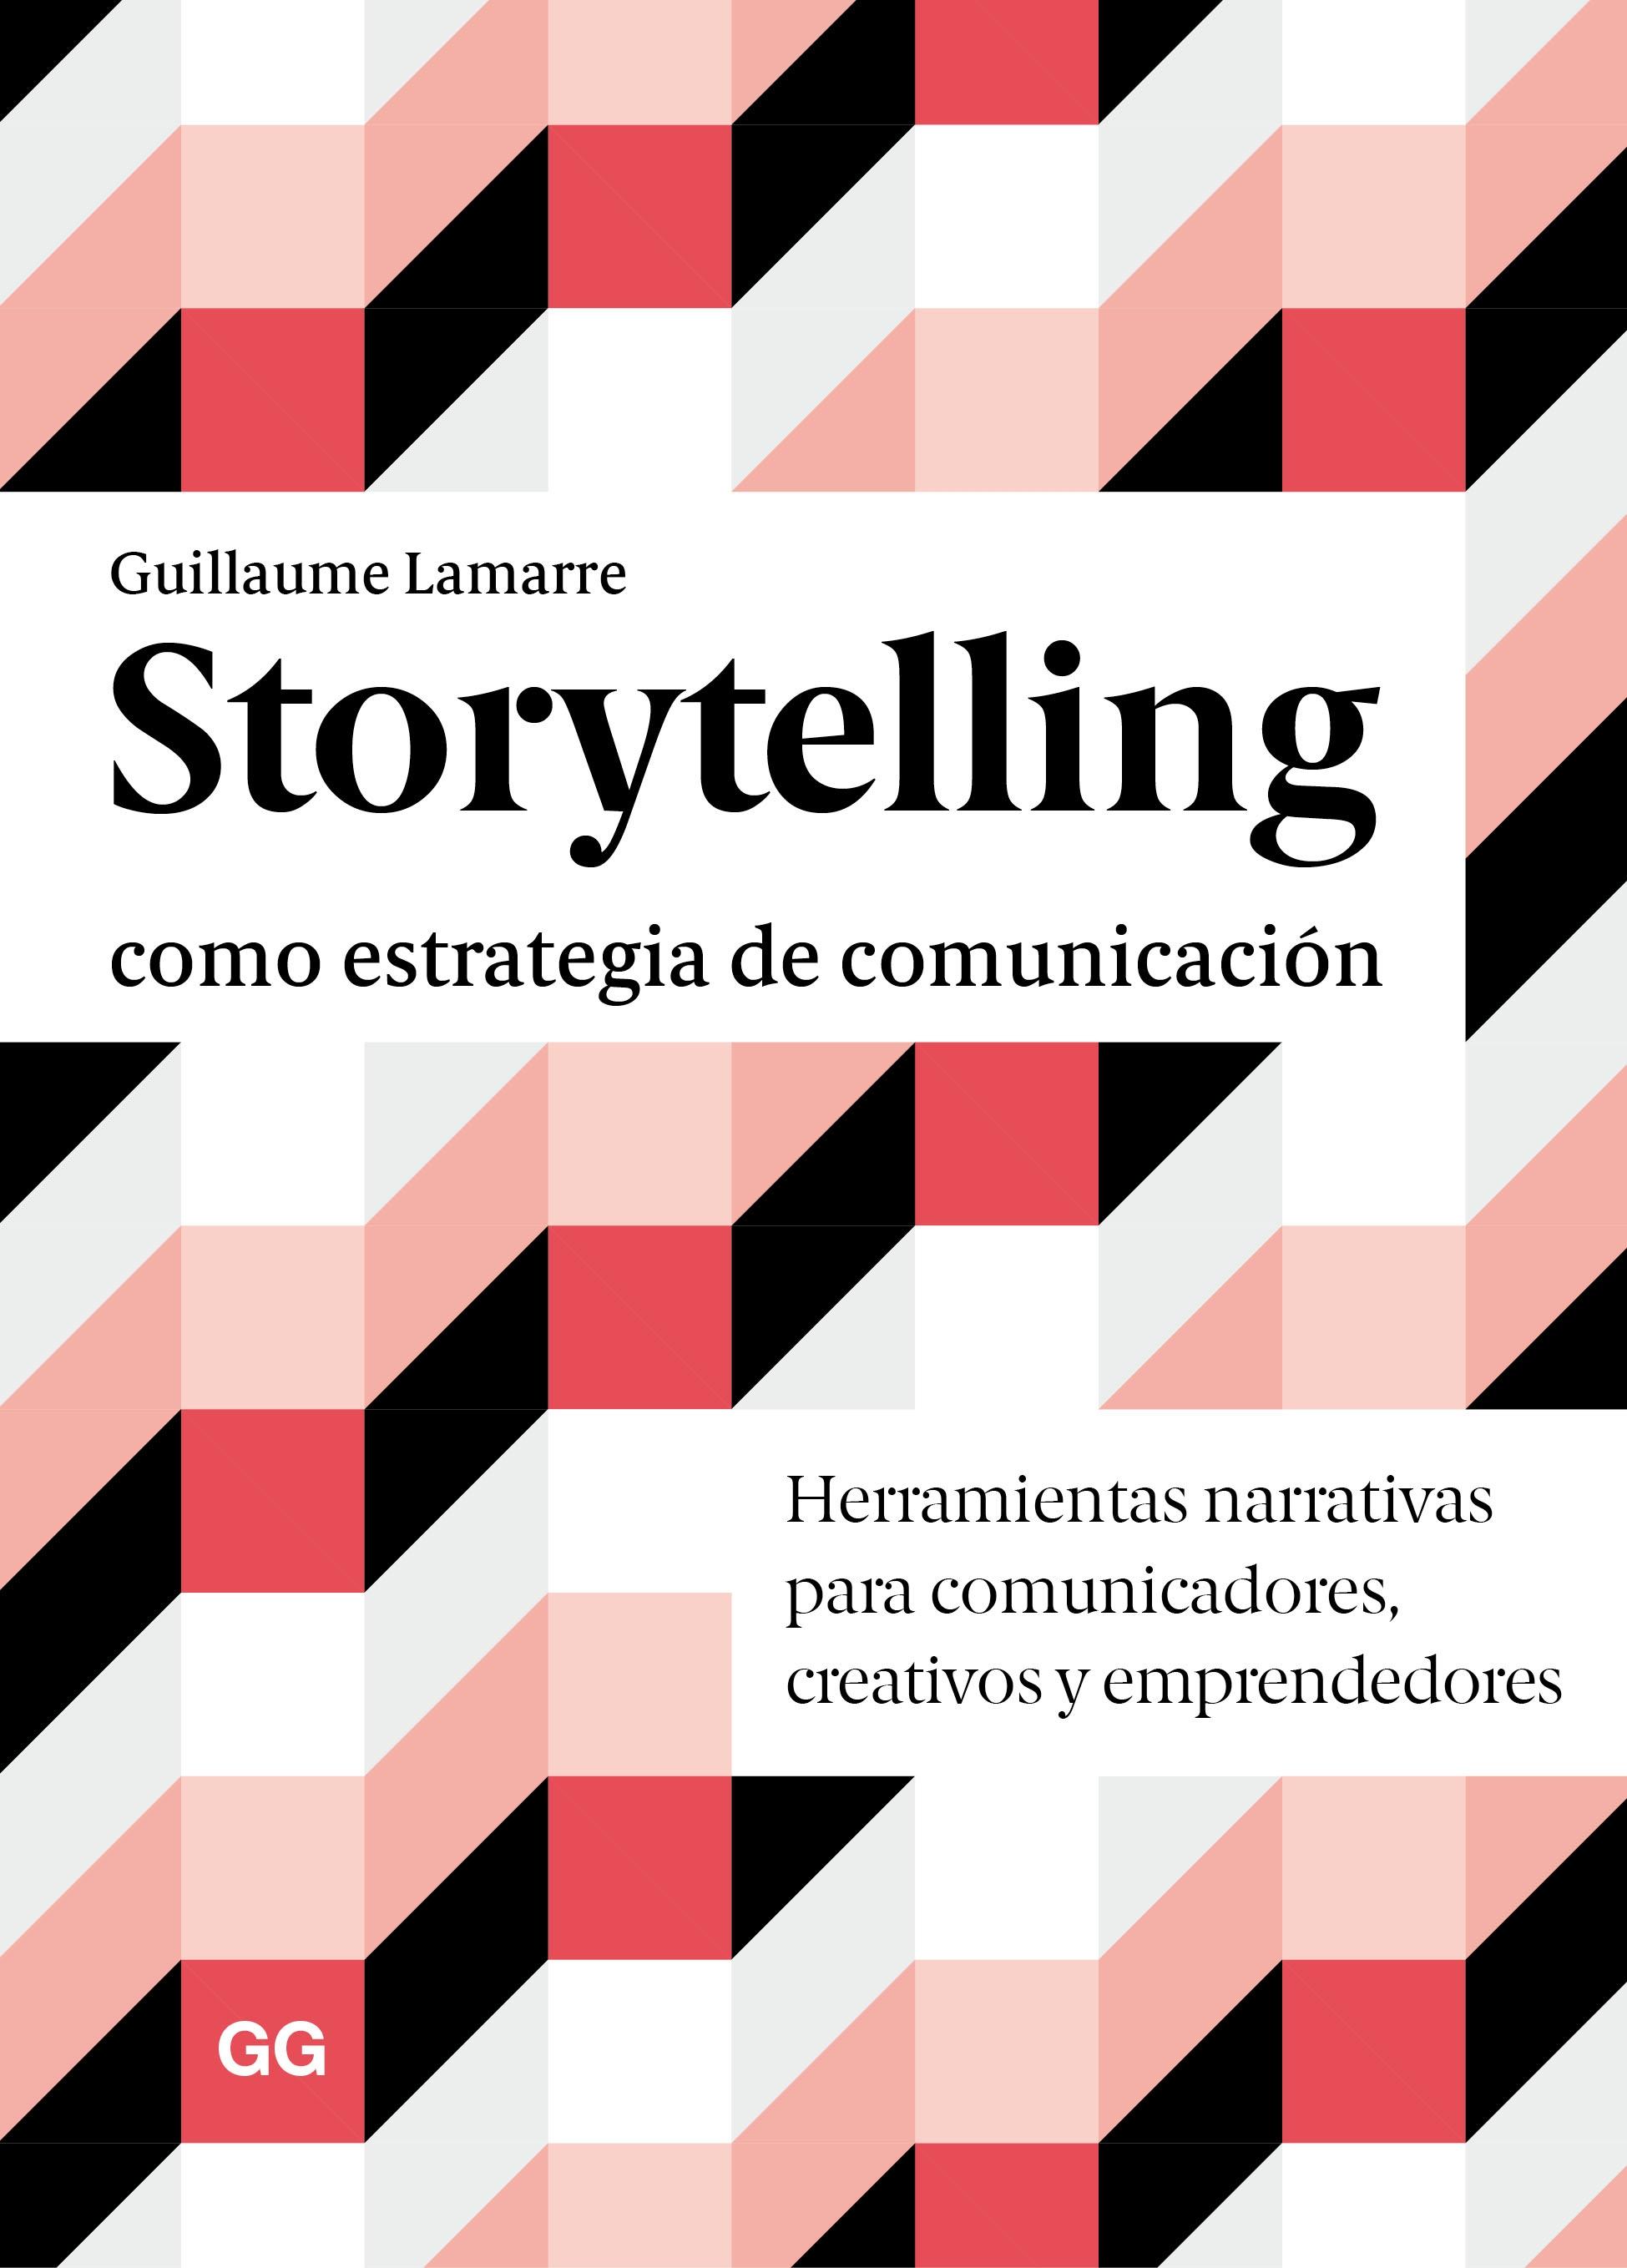 STORYTELLING COMO ESTRATEGIA DE COMUNICACIÓN "HERRAMIENTAS NARRATIVAS PARA COMUNICADORES, CREATIVOS Y EMPRENDEDORES". 